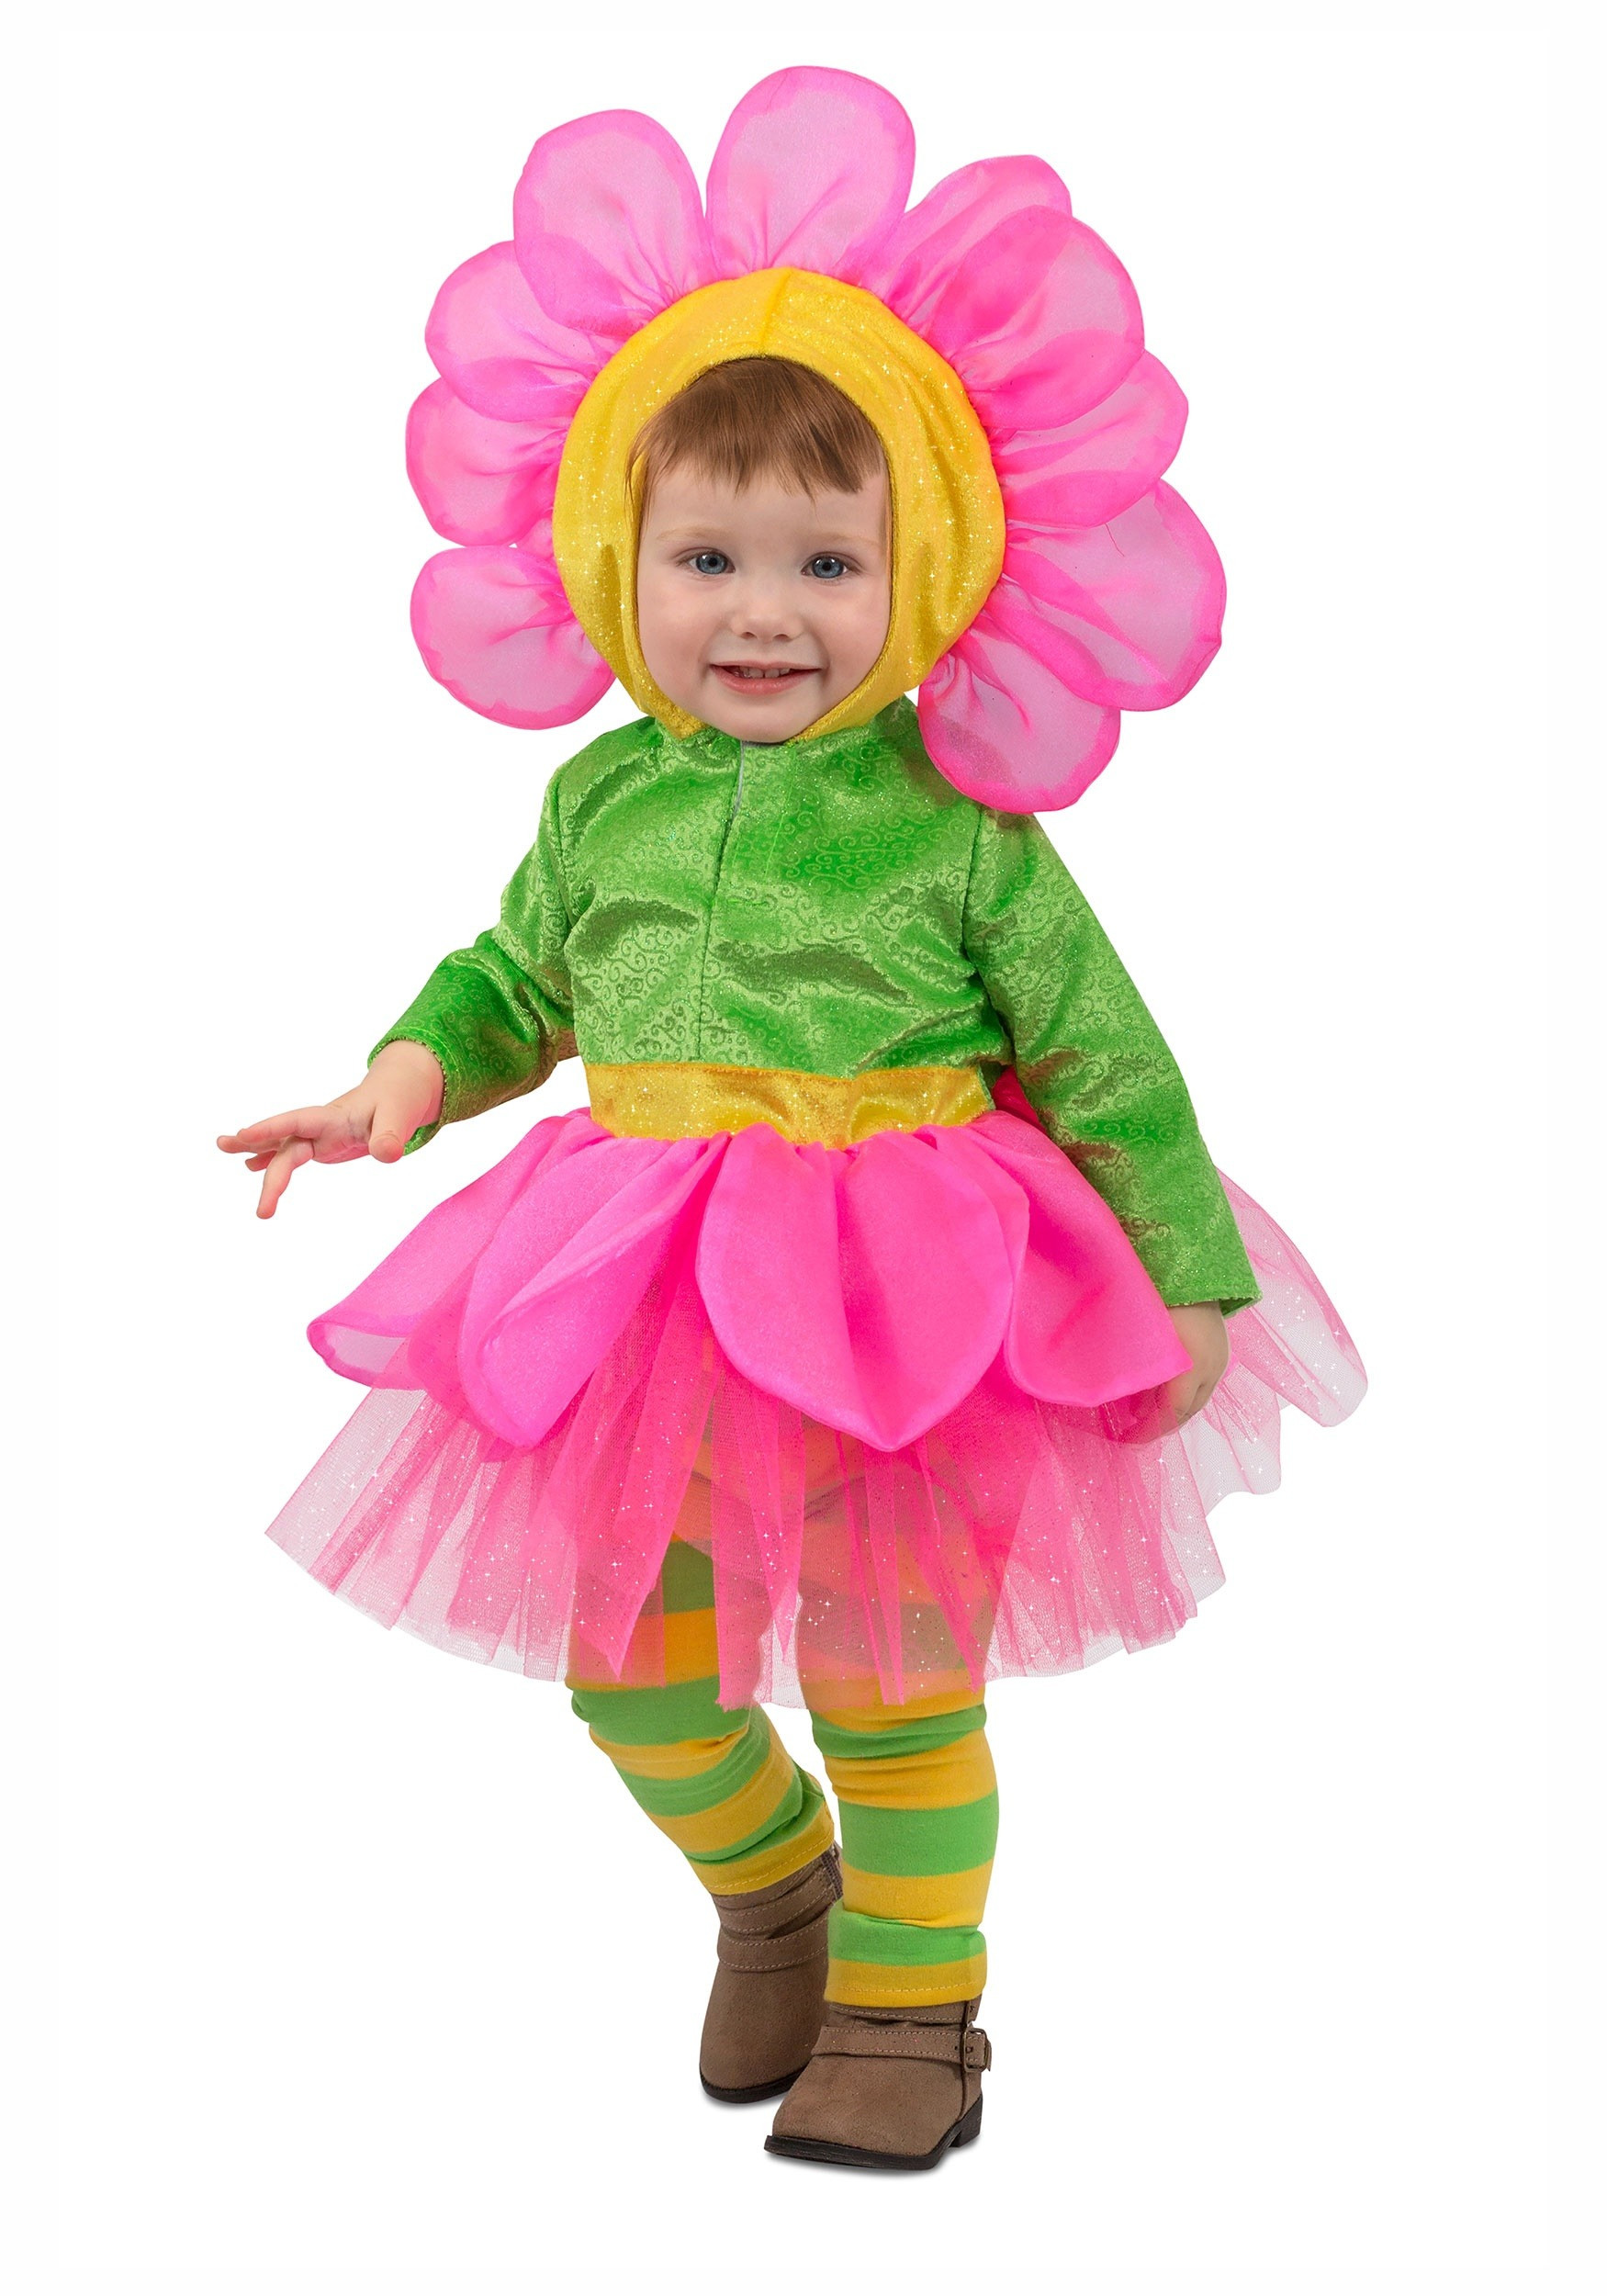 Flower Halloween Costume For Toddler
 Girls Flower Costume for a Toddler